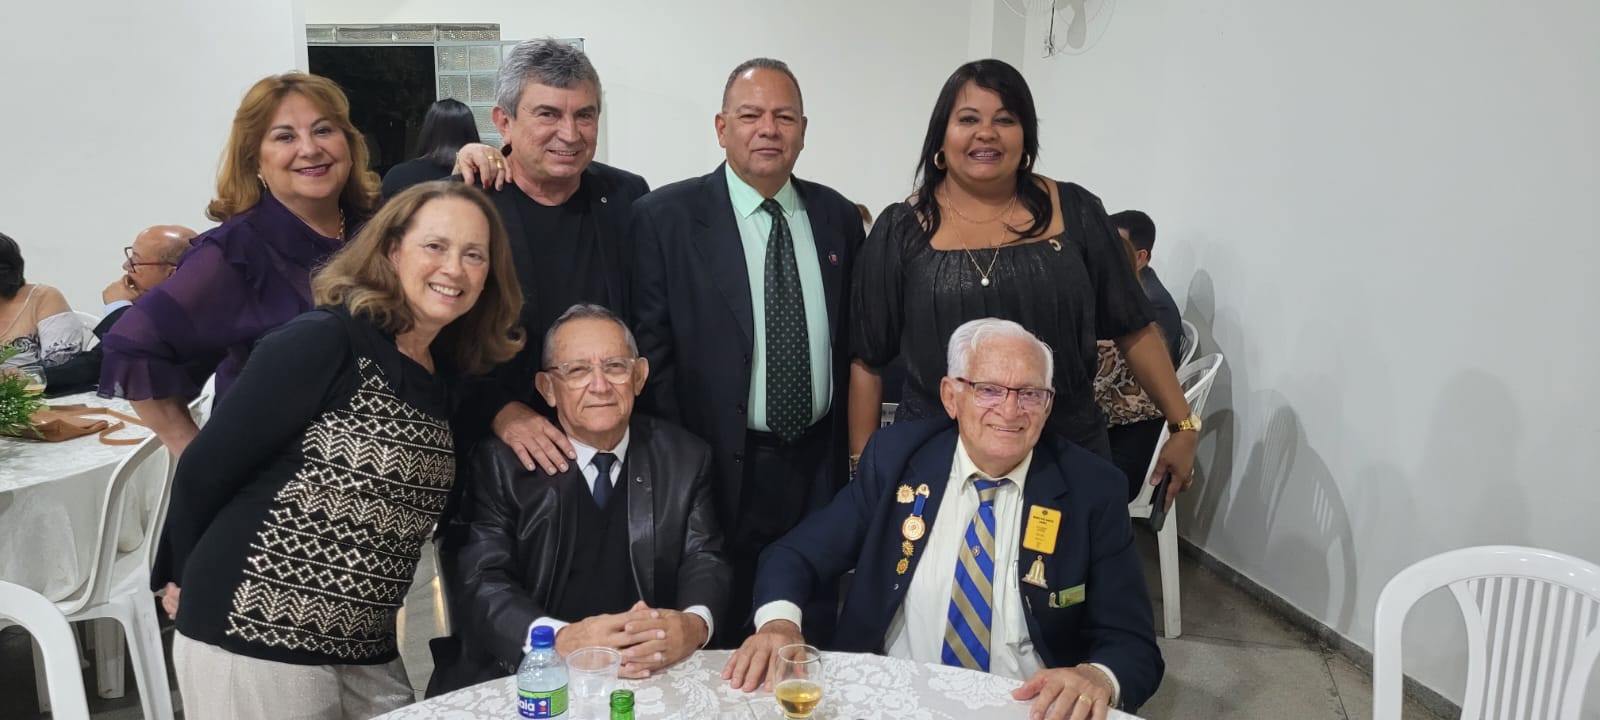 Empresário Benoni toma posse como novo presidente do Lions Clube de Picos;  fotos – Cidades na Net